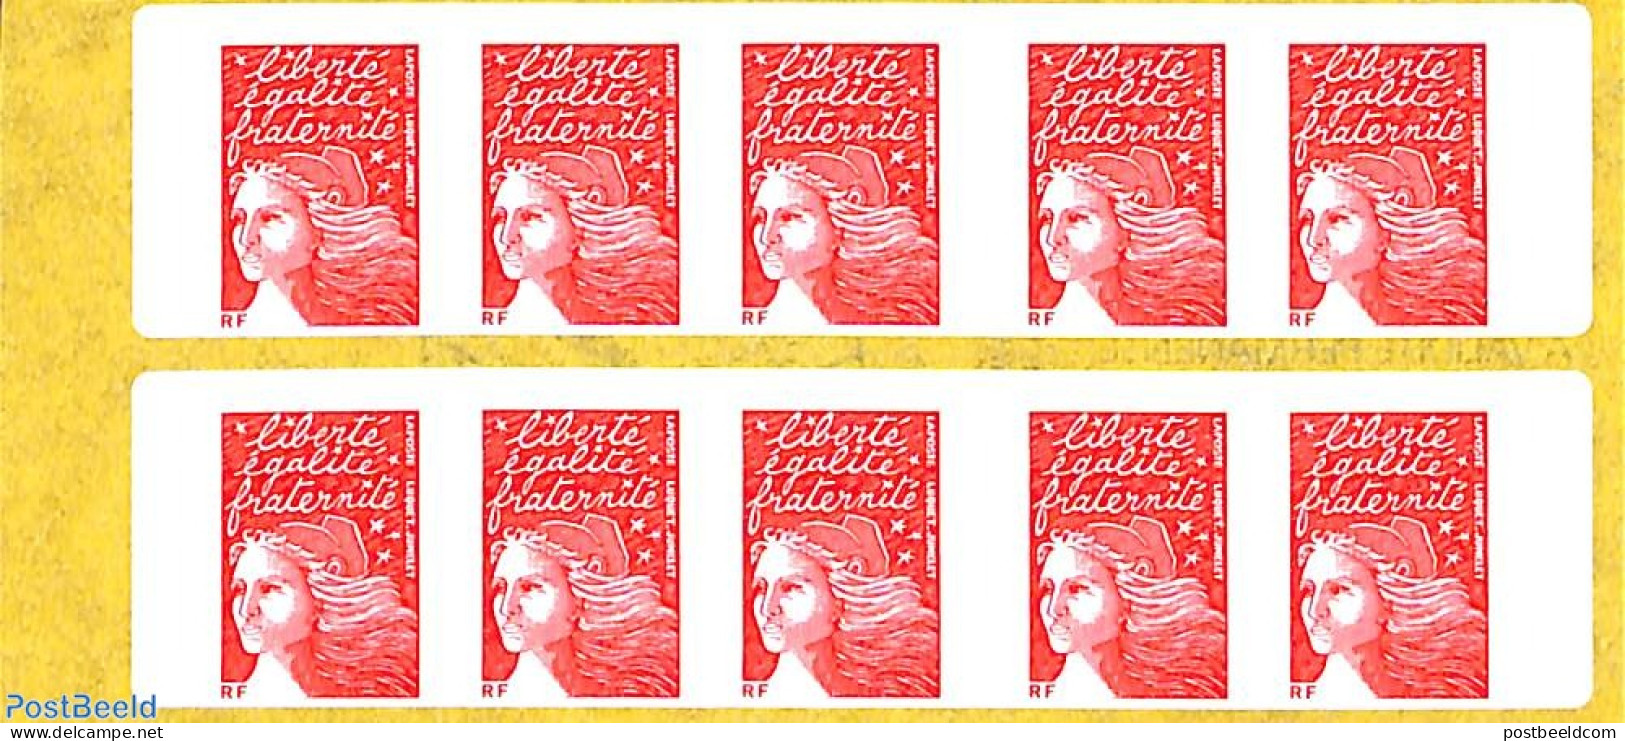 France 2002 Un Plaisir Qui Se Communique, Booklet 10x Timbre Rouge S-a, Mint NH - Unused Stamps